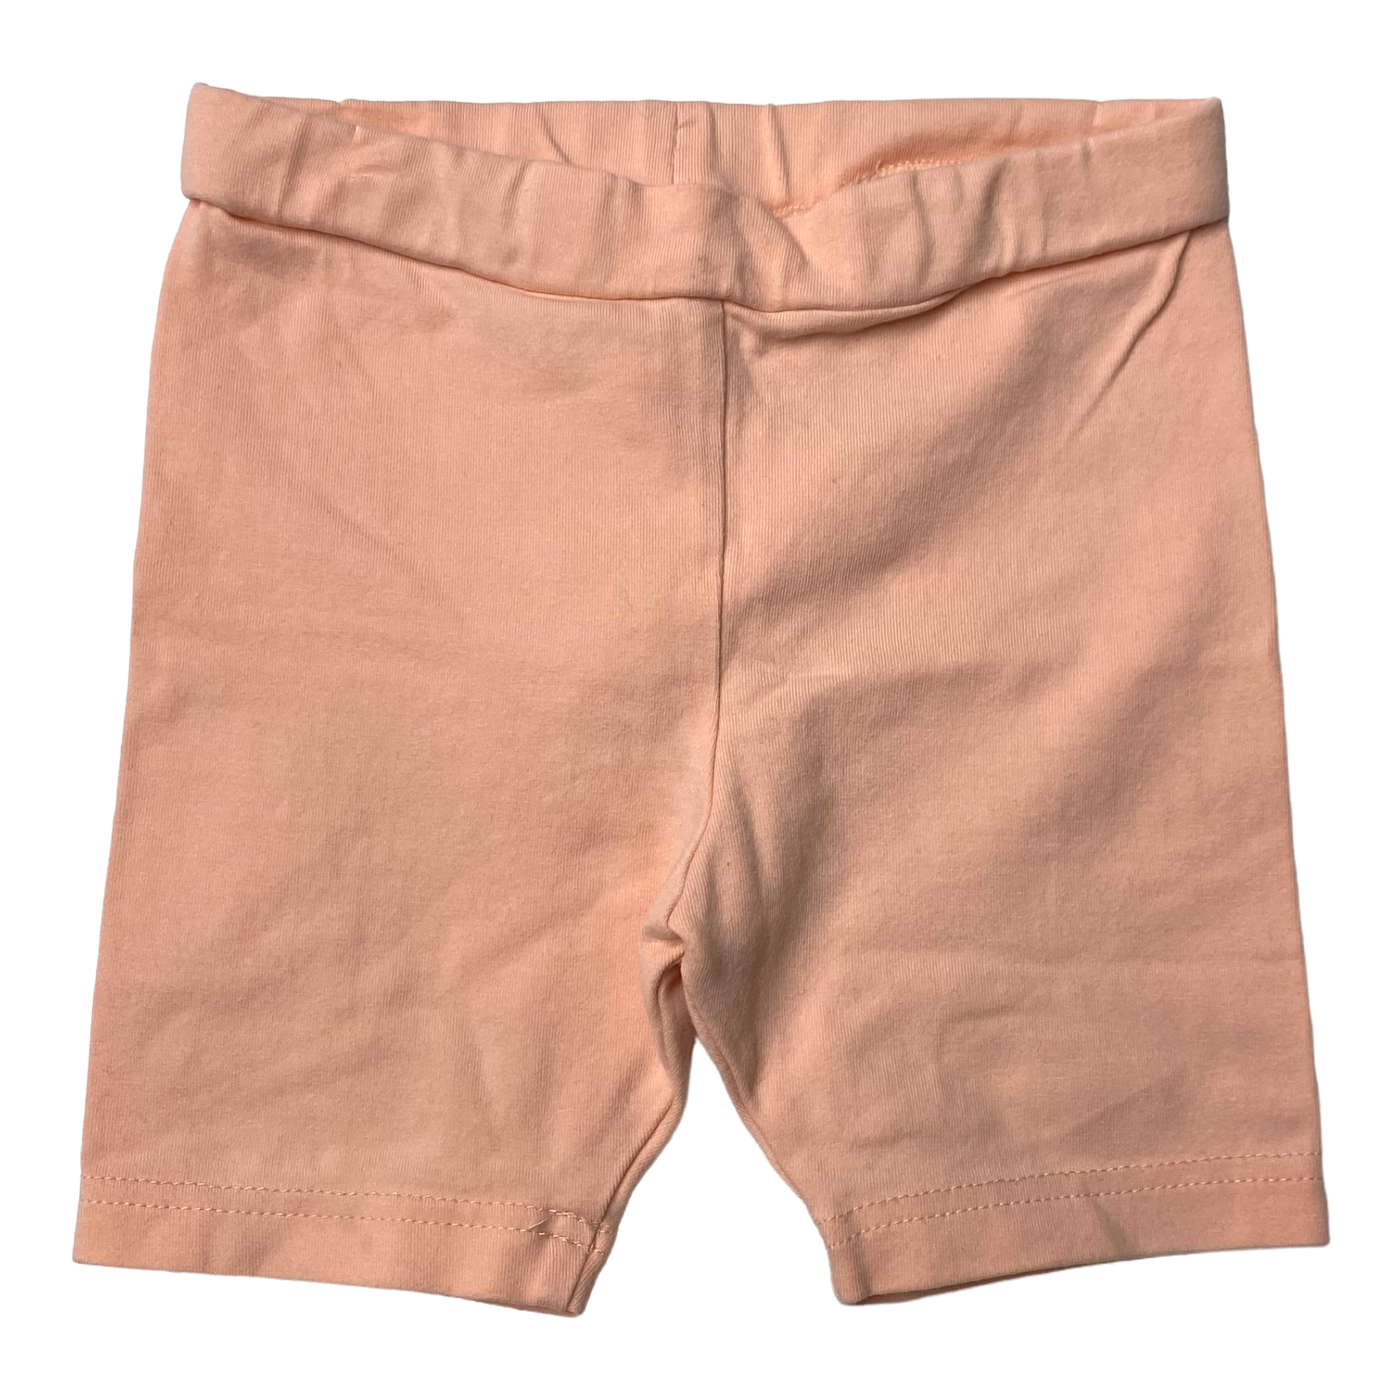 Gugguu biker shorts, pink | 80cm